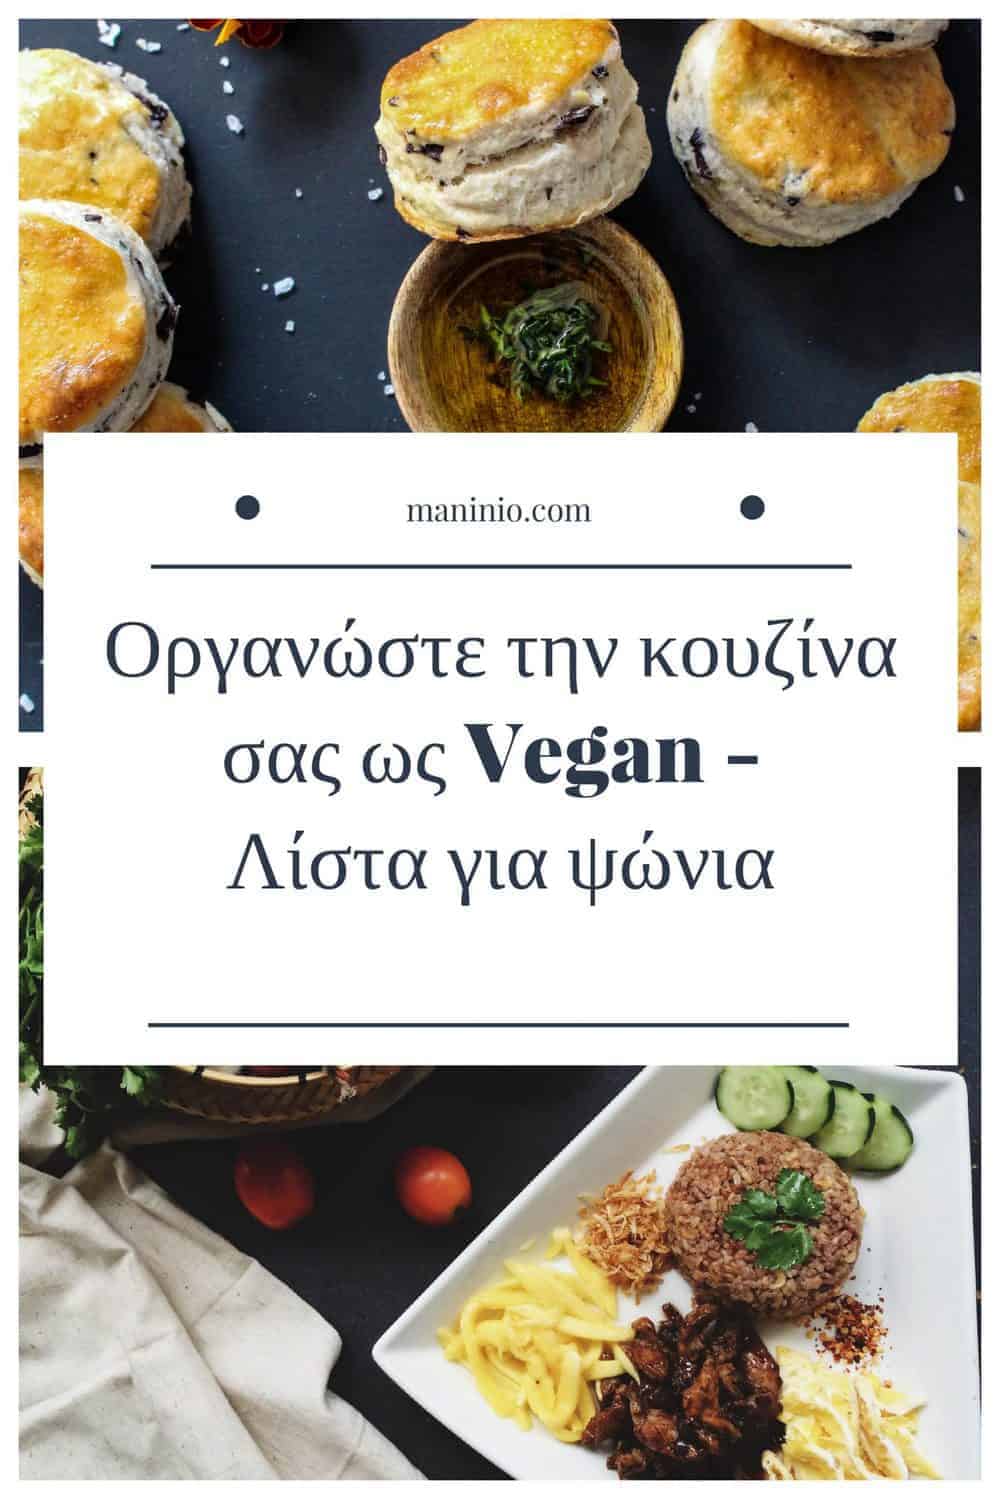 Οργανώστε την κουζίνα σας ως Vegan. Λίστα για ψώνια. maninio.com #veganshoppinglist